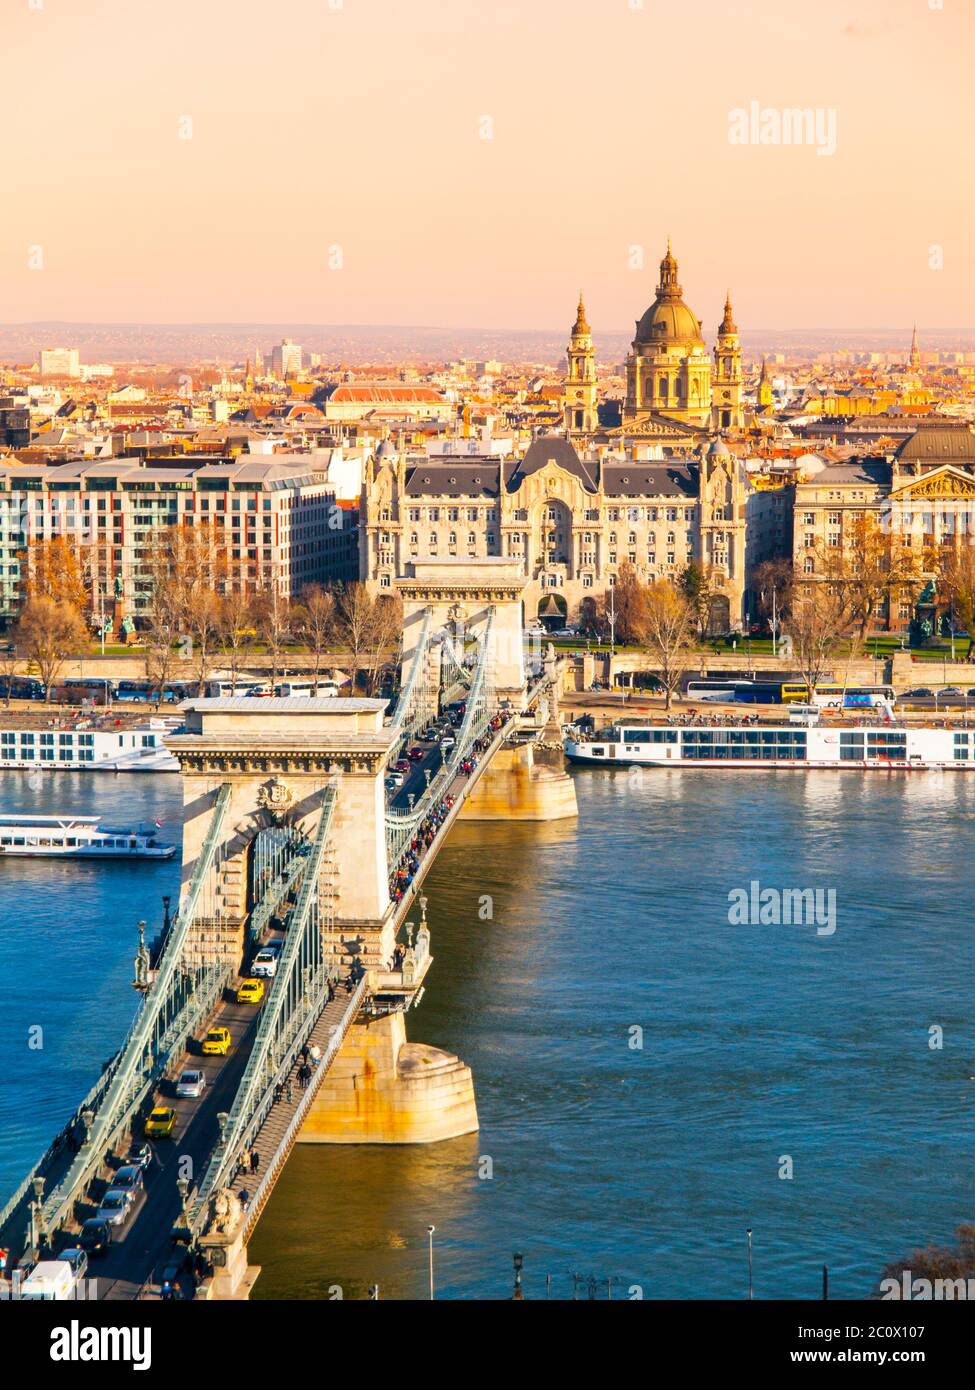 Il famoso Ponte delle catene sul Danubio e la Basilica di Santo Stefano si affacciano dal Castello di Buda, nella soleggiata giornata autunnale di Budapest, capitale dell'Ungheria, in Europa. Sito patrimonio dell'umanità dell'UNESCO Foto Stock